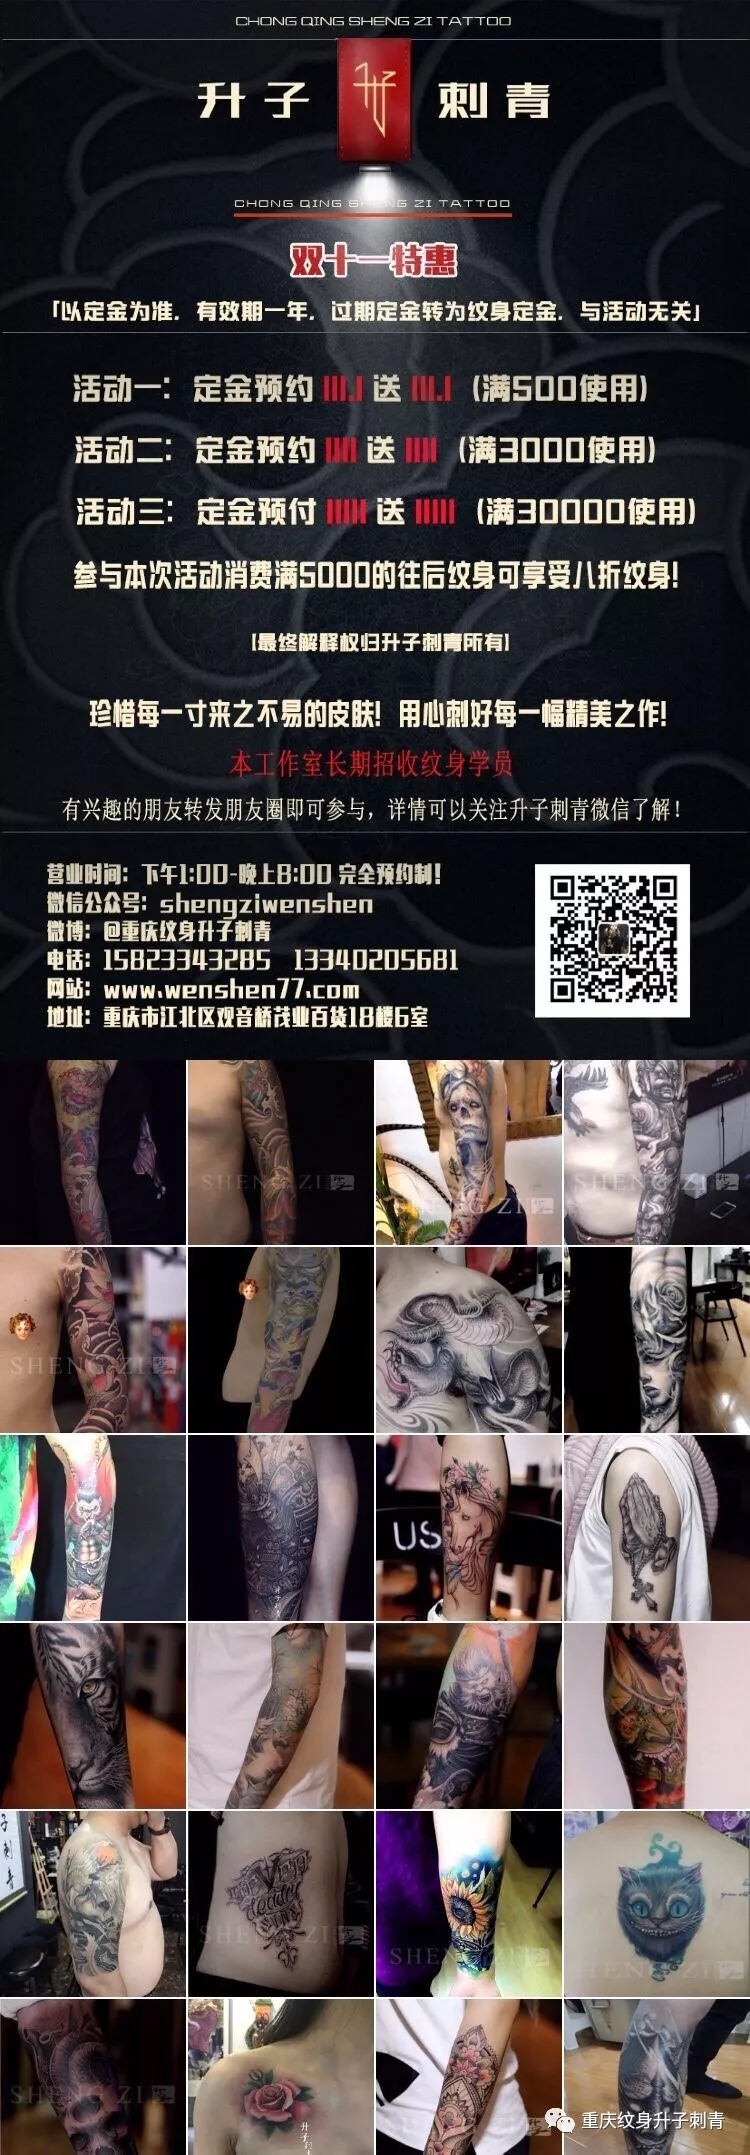 重庆纹身店 双11特惠 双11纹身活动开始了